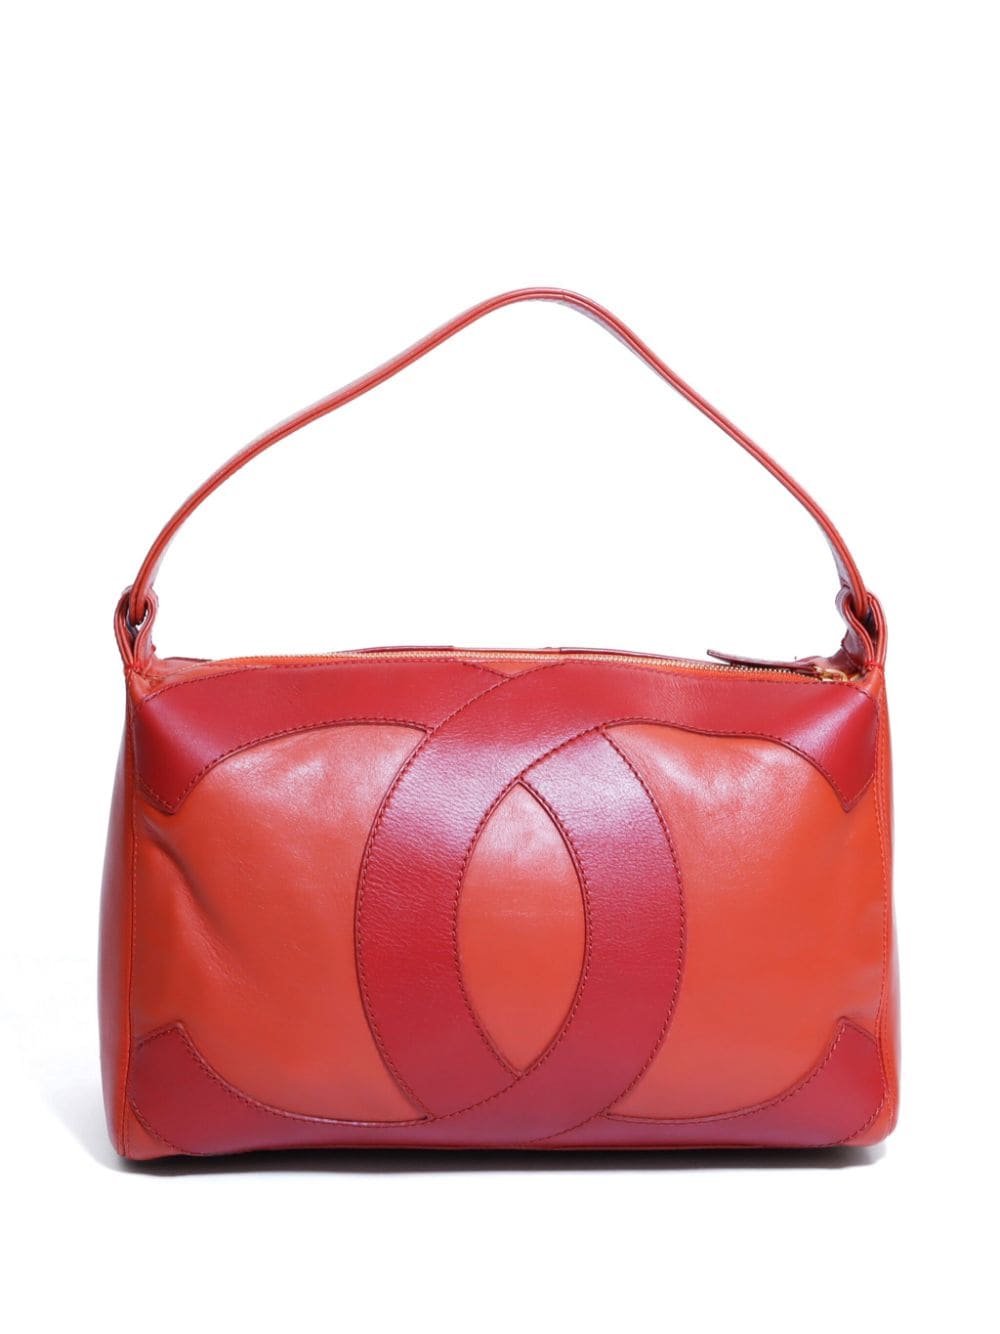 Image 2 of CHANEL Pre-Owned 2004-2005 Surpique CC handbag